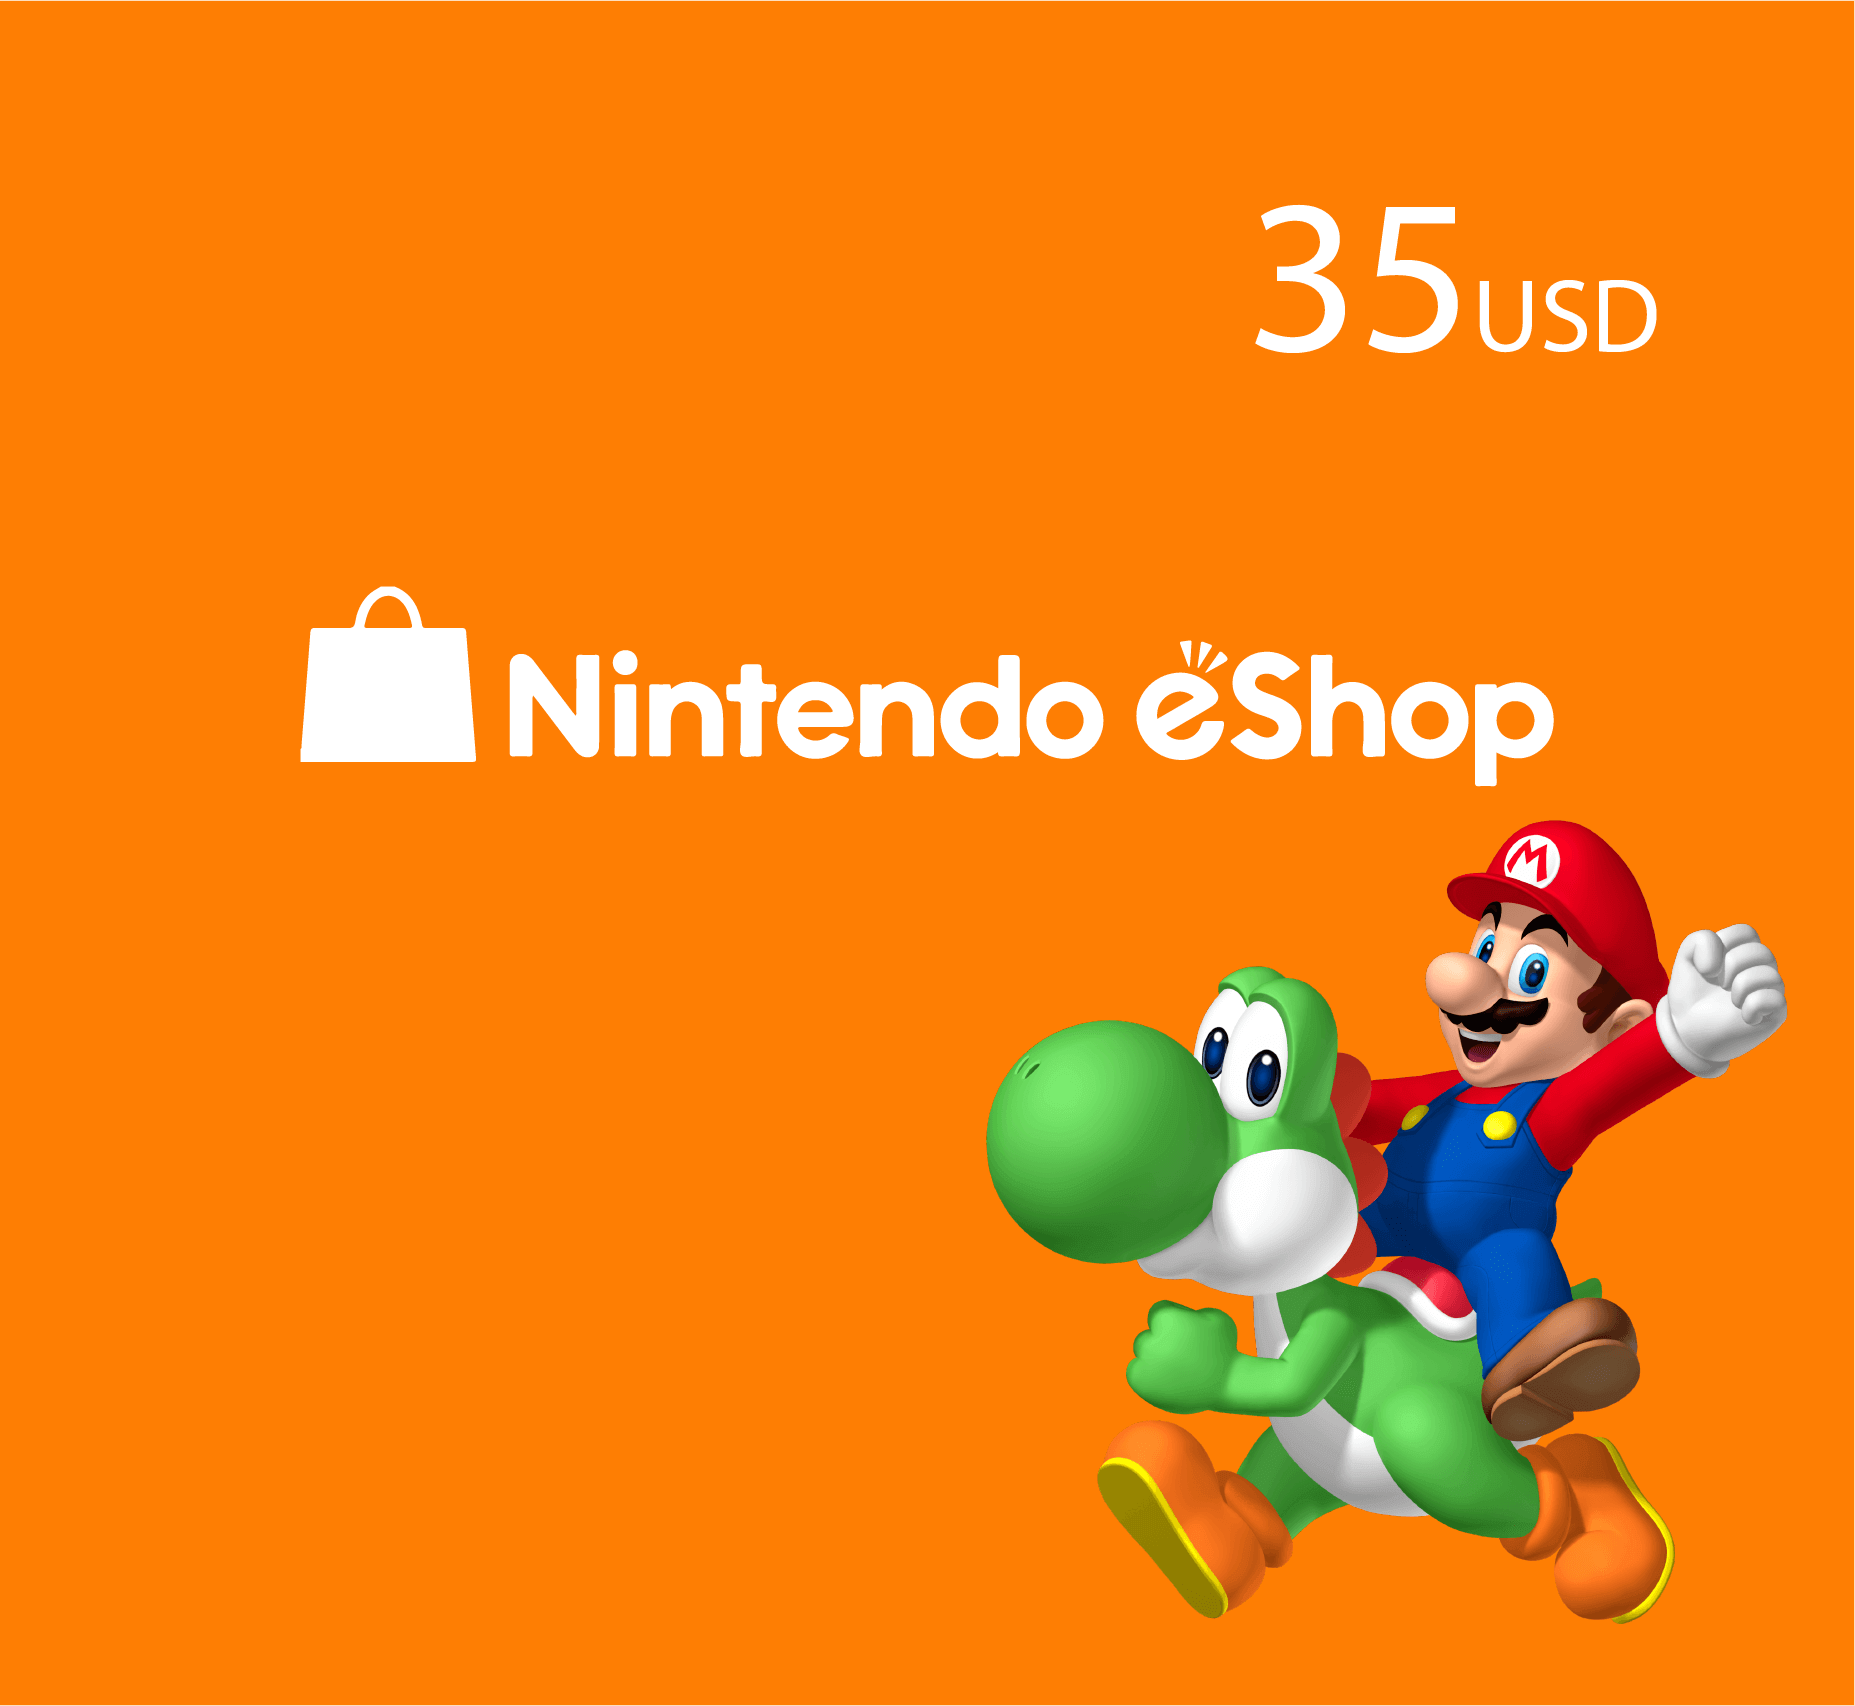 Nintendo eShop 35 USD